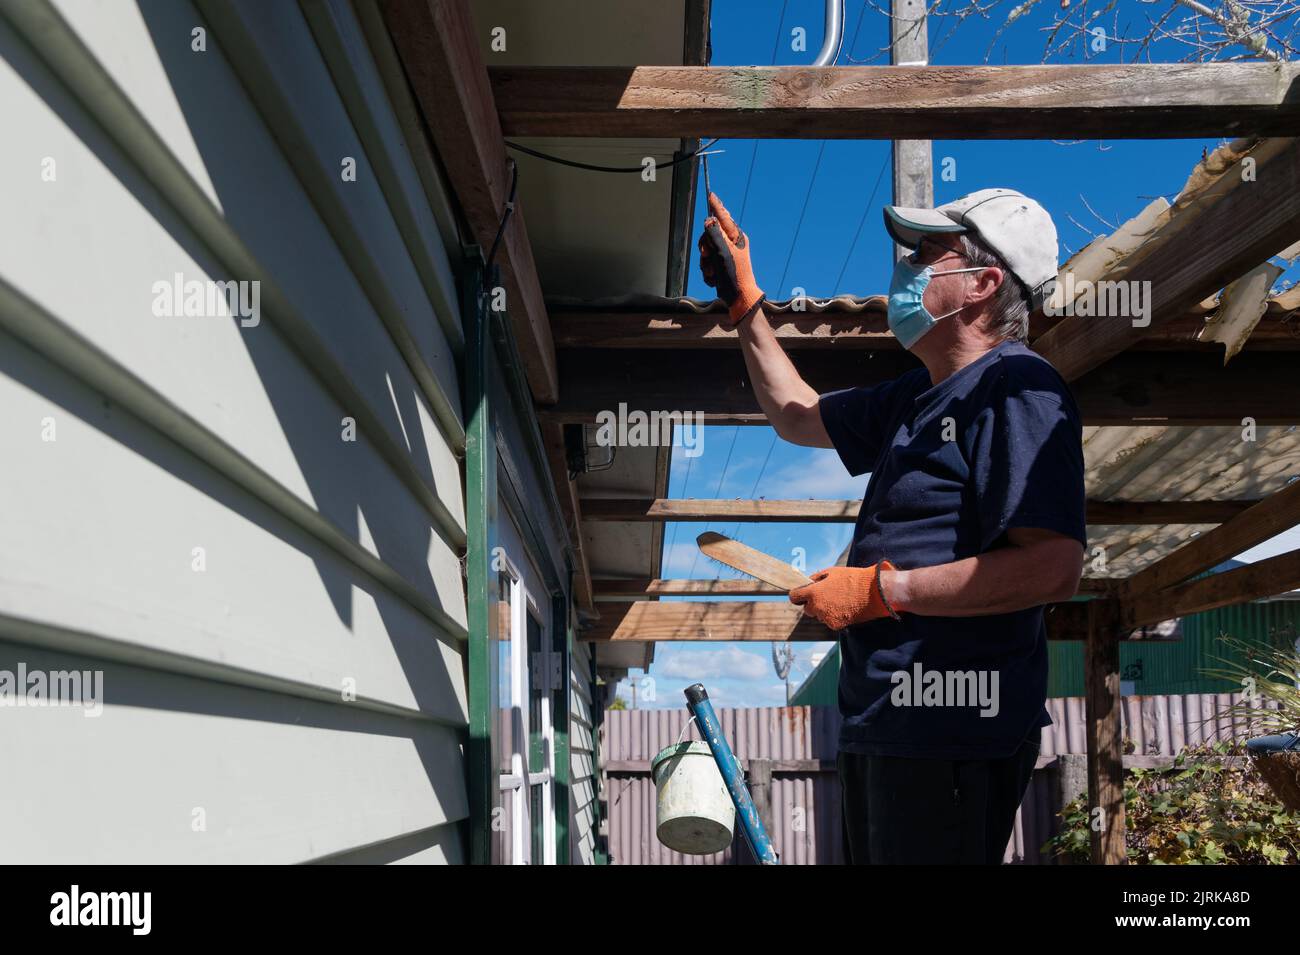 Préparation de peinture, un homme adulte est en haut d'une échelle raclant la peinture lâche d'un bargeboard sur une maison de panneau d'intempéries Banque D'Images